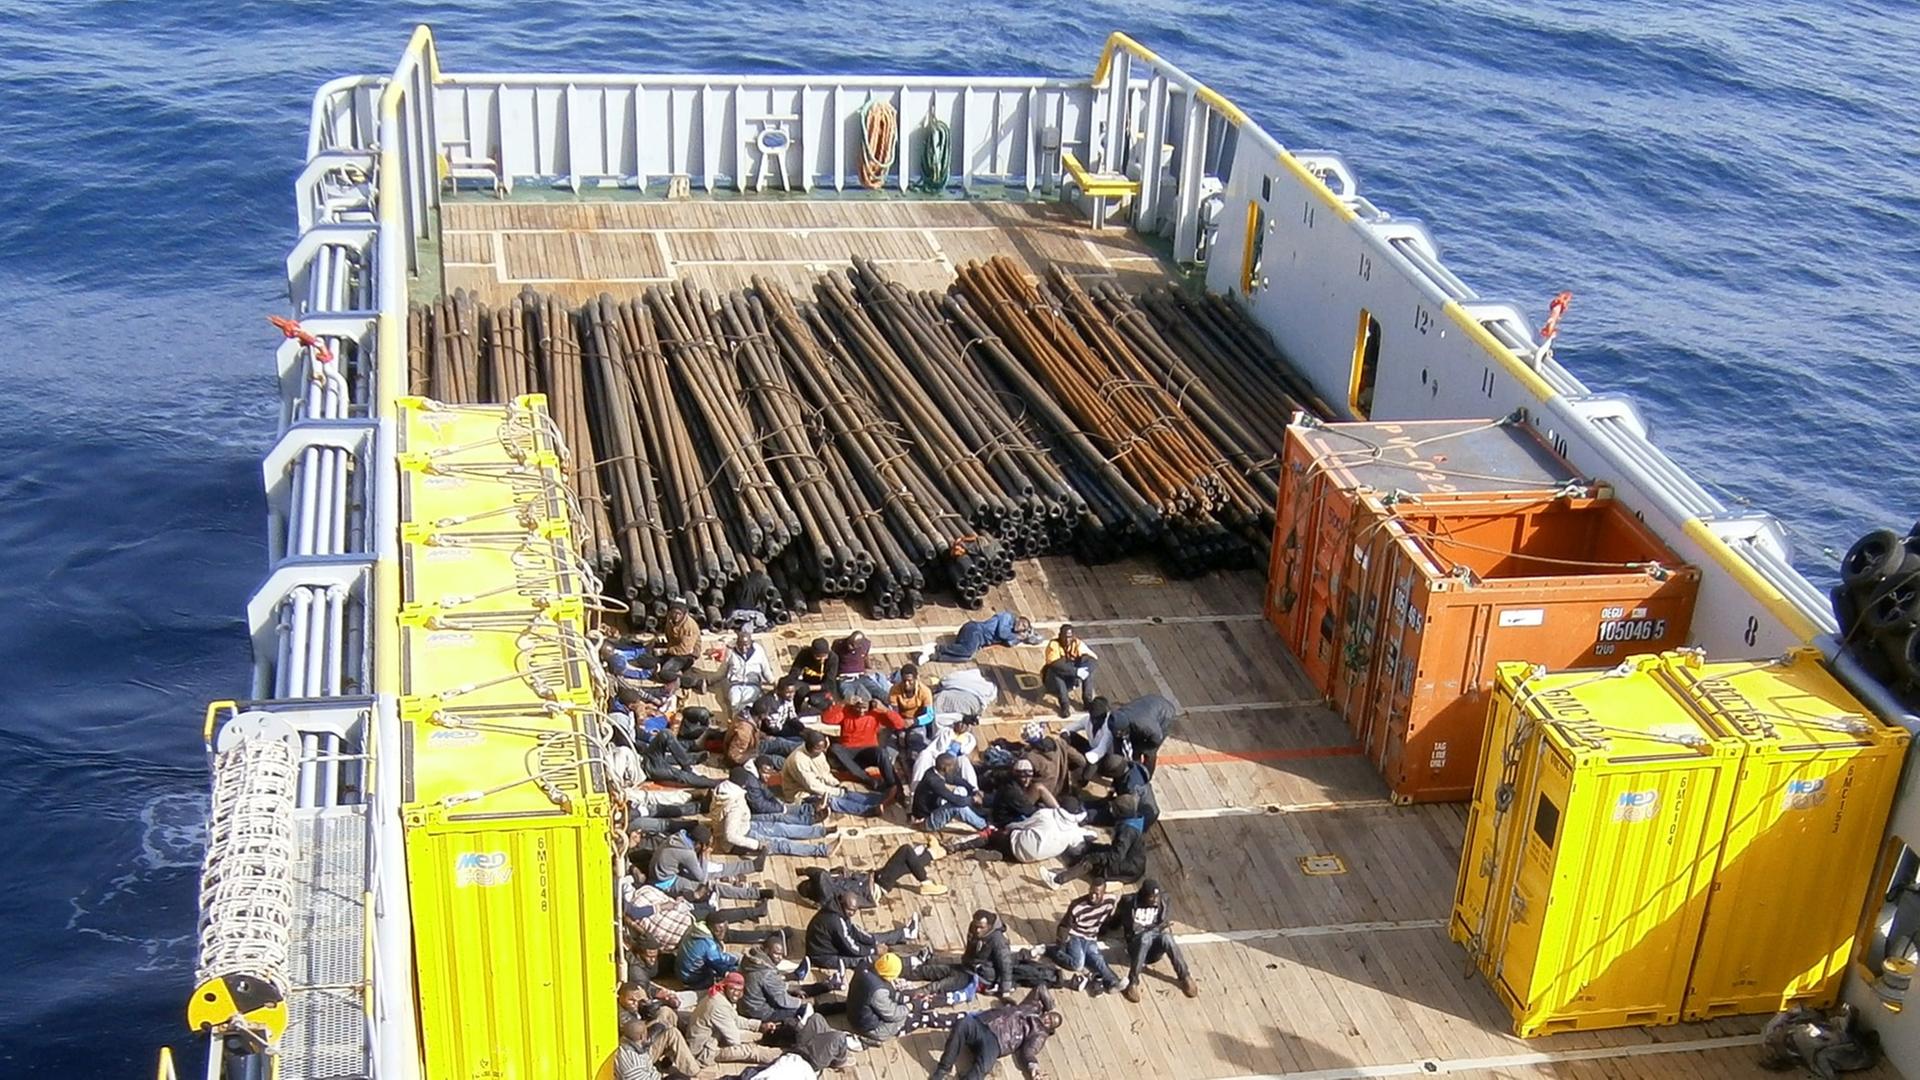 Im hinteren Teil eines Frachtschiffes befinden sich Dutzende Flüchtlinge, hinter ihnen Stahlträger und einige kleinere Container.